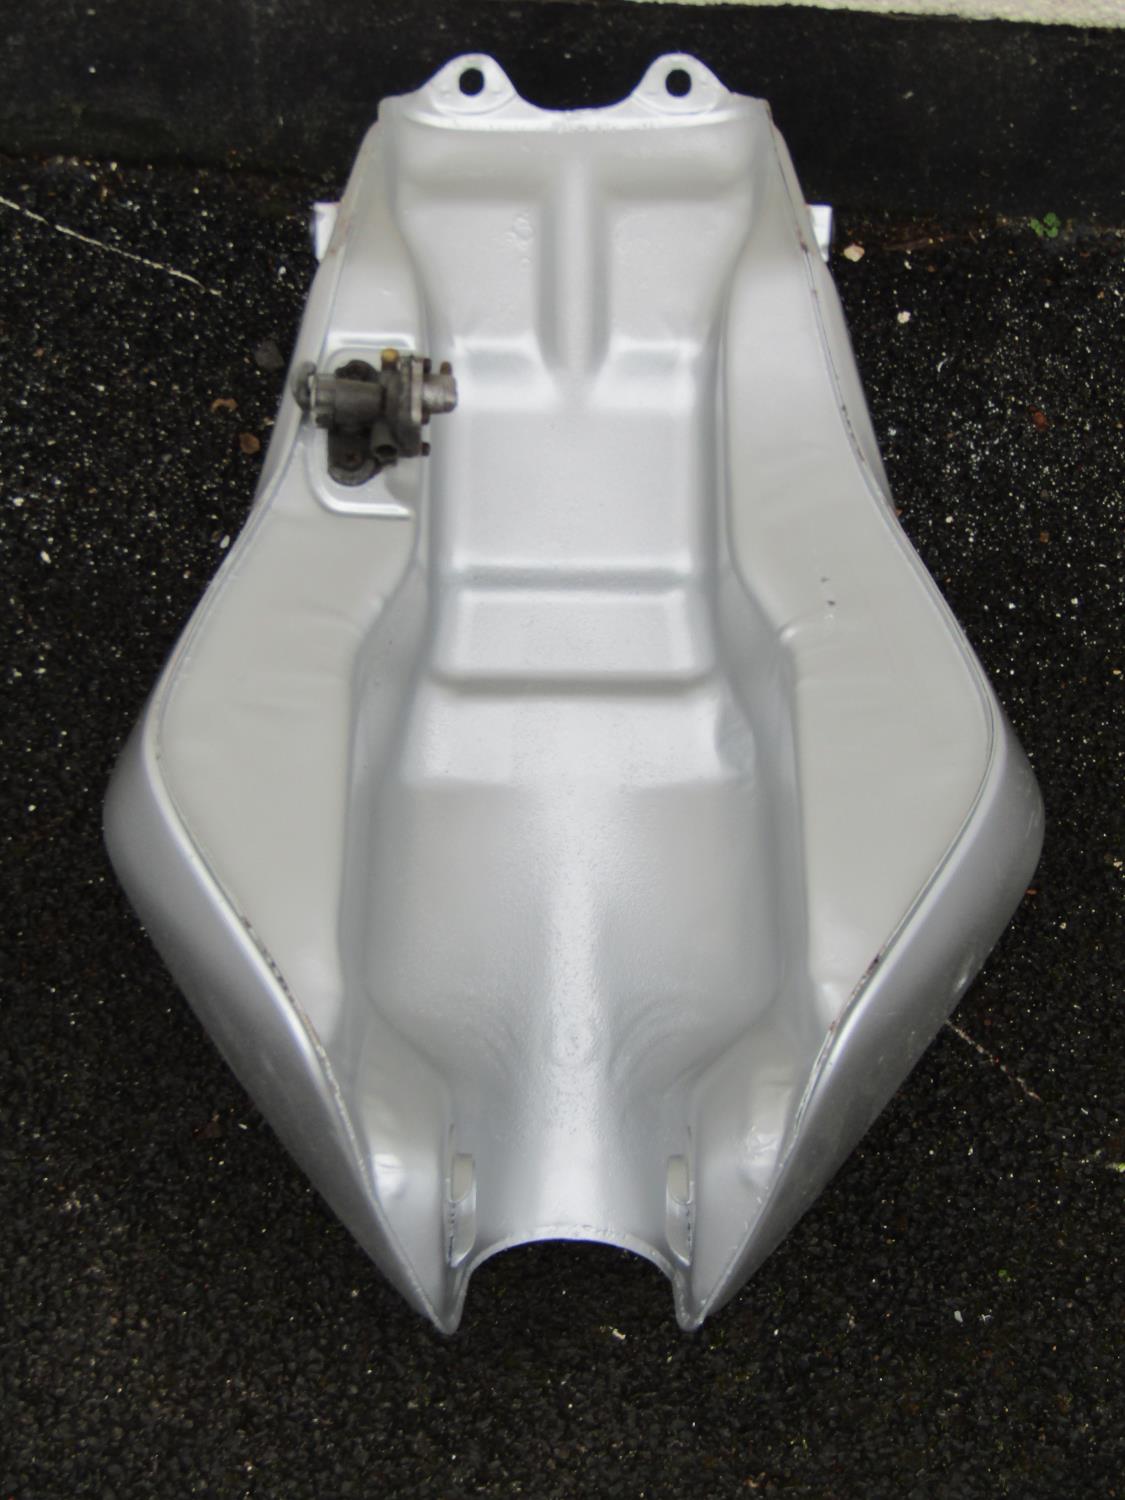 Suzuki fuel tank (appears as new/unused) - Image 3 of 3